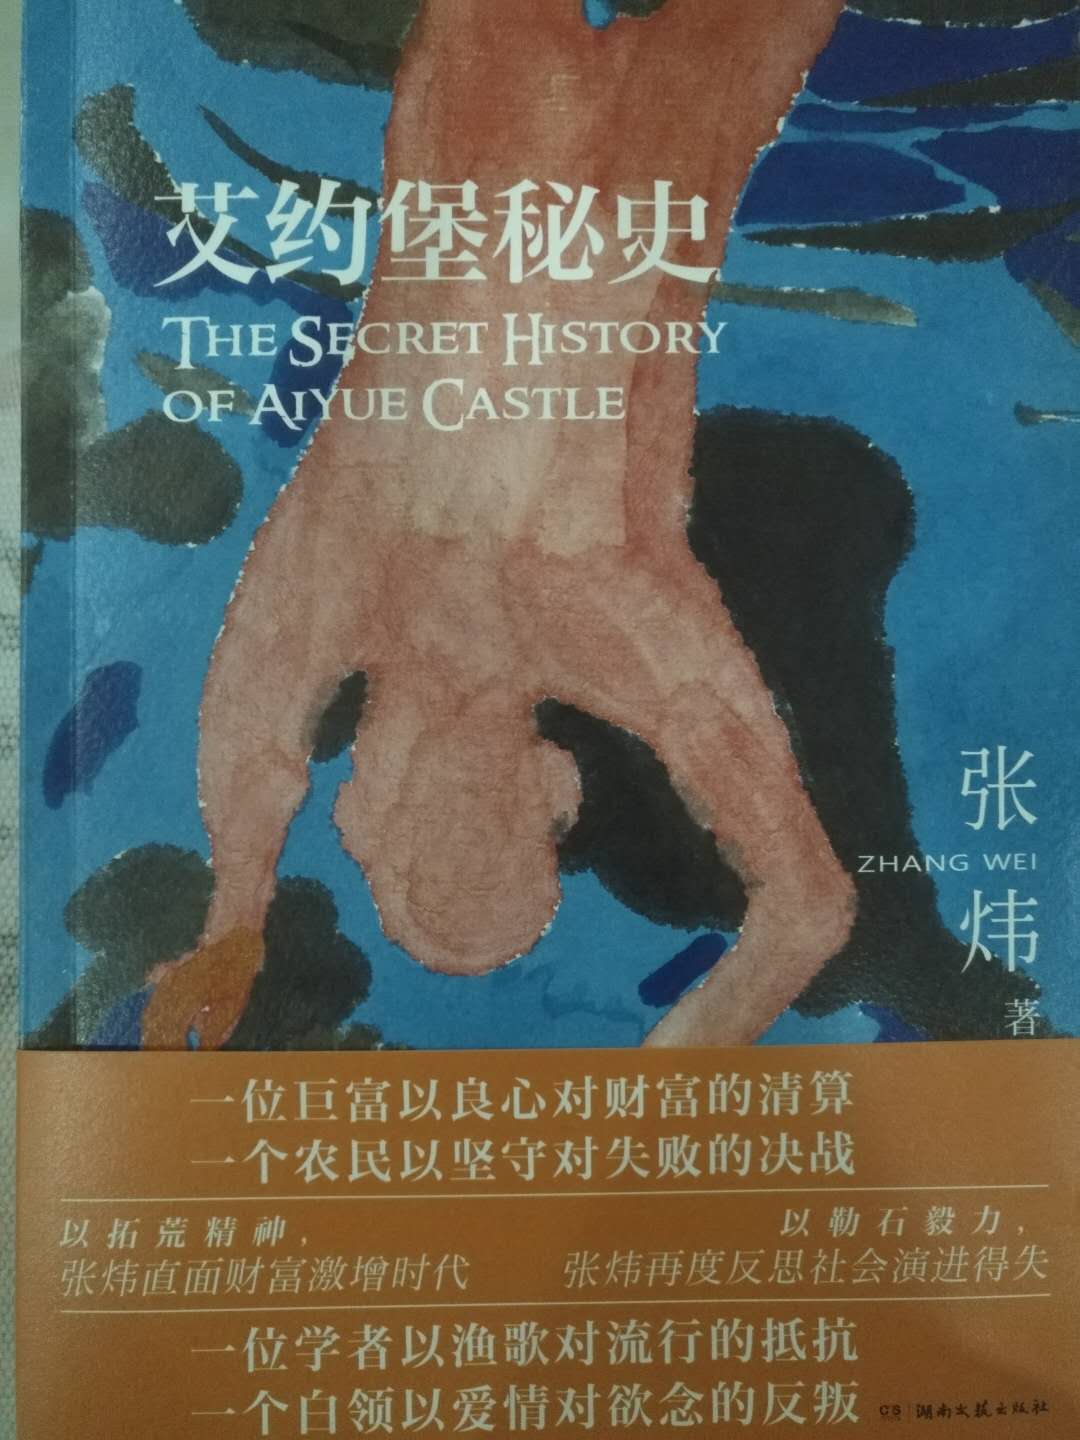 封面很精致，印刷精美。湖南文艺社的书不错?书已经看完第一章了，很喜欢，文字非常出色，故事非常精彩。张炜的小说真是太棒了。